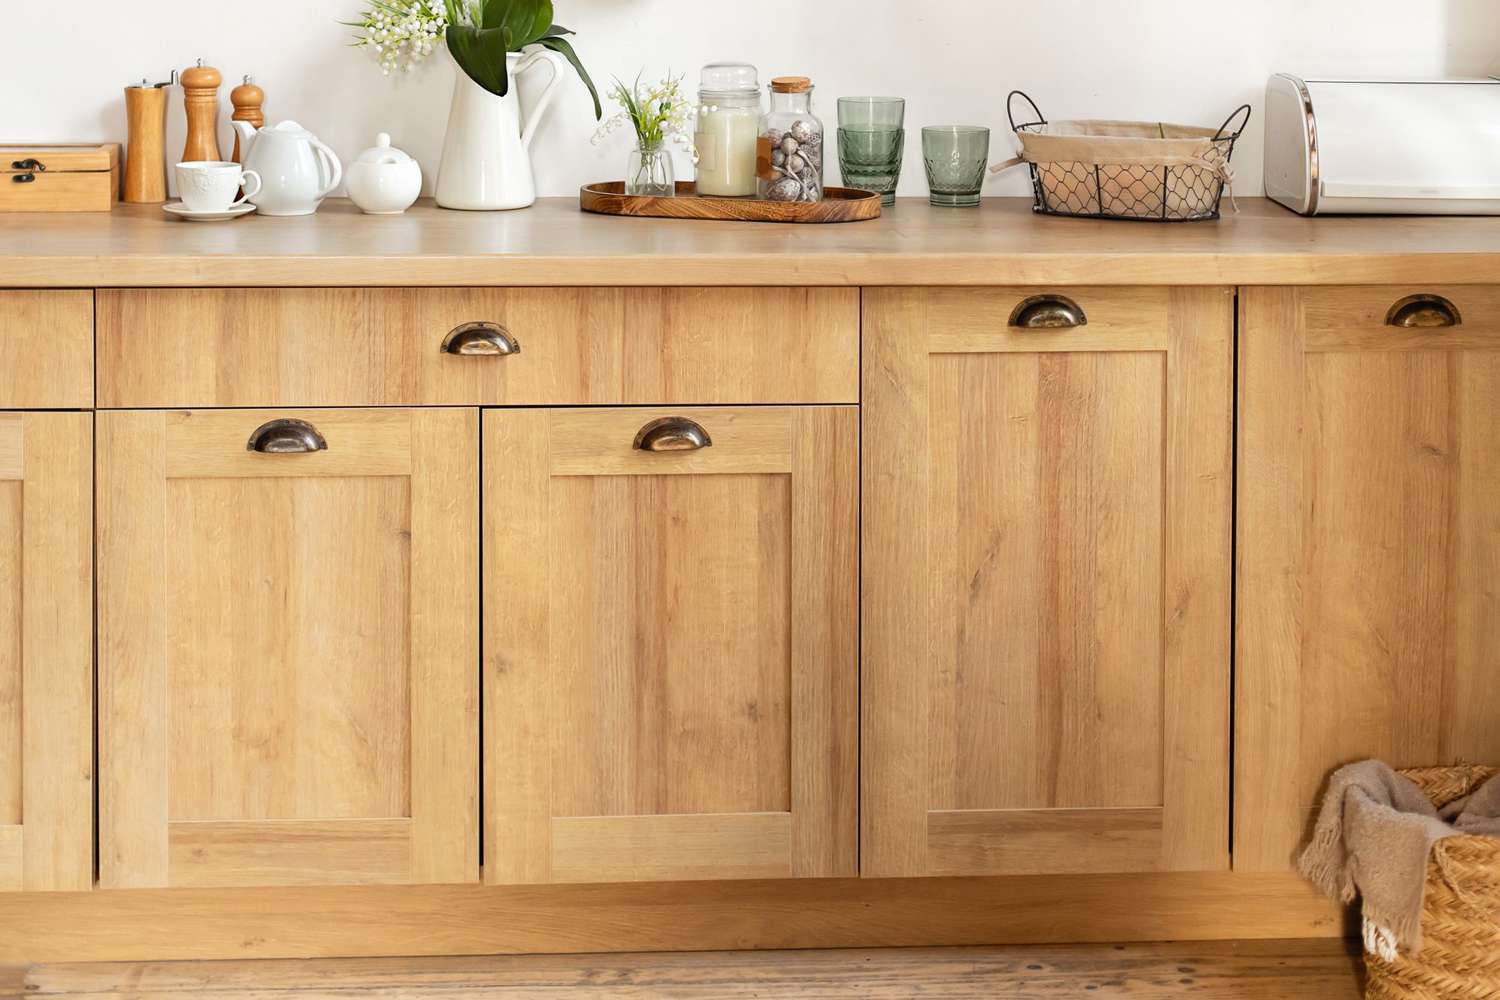 Wooden cuisine cabinet with clean dishes. Scandinavian style kitchen interior. Organization of storage in kitchen.